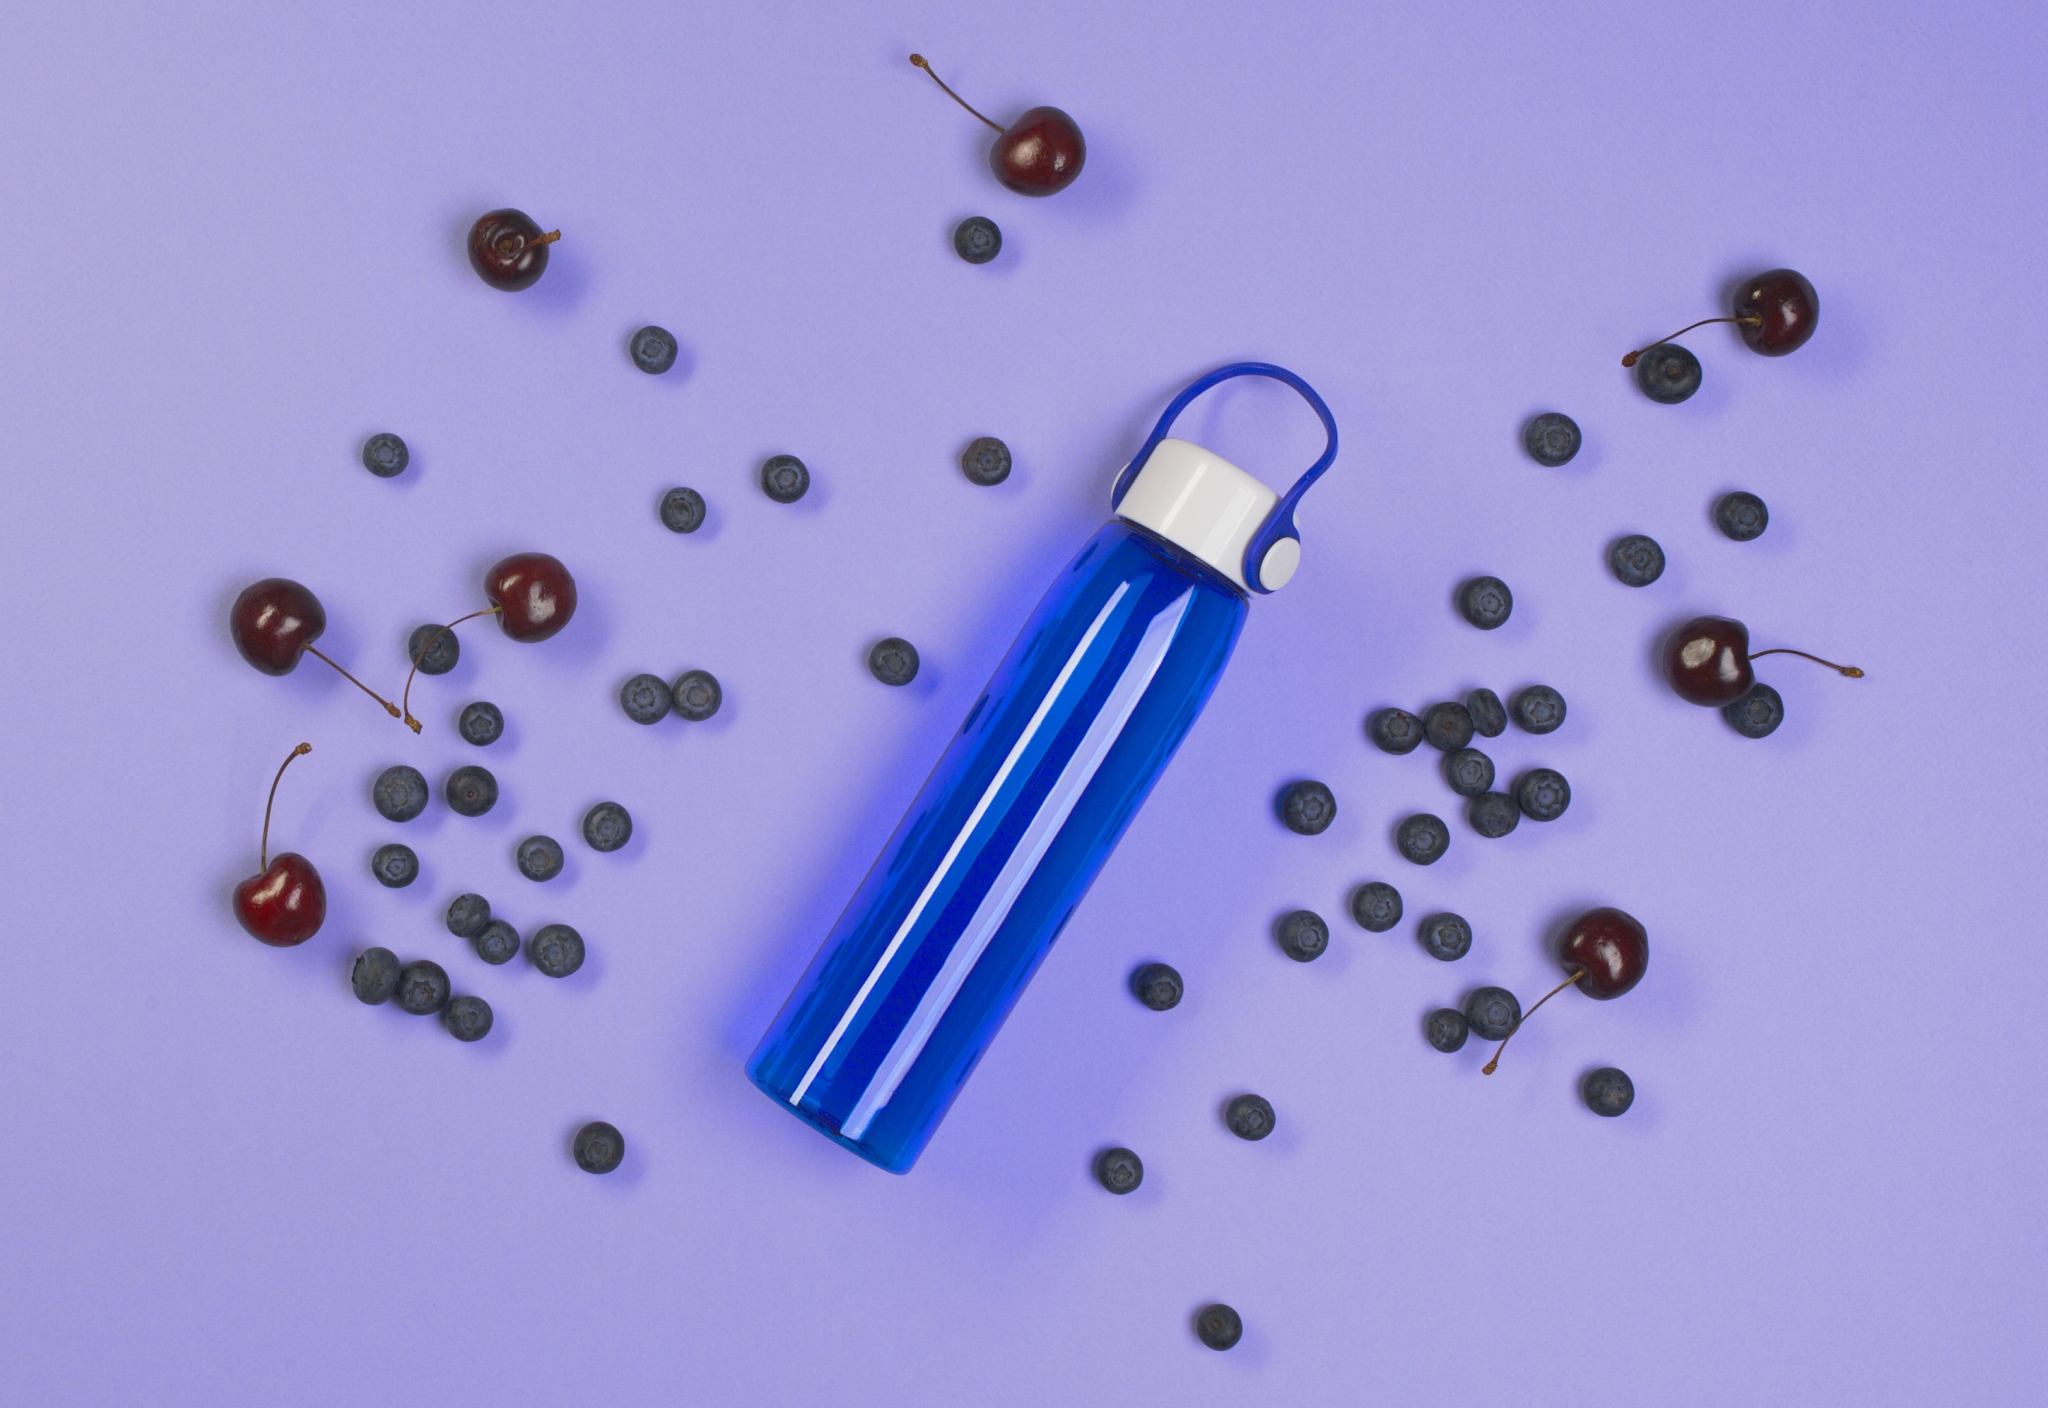 Бутылка для воды "Aqua", 550 мл, синий, тритан